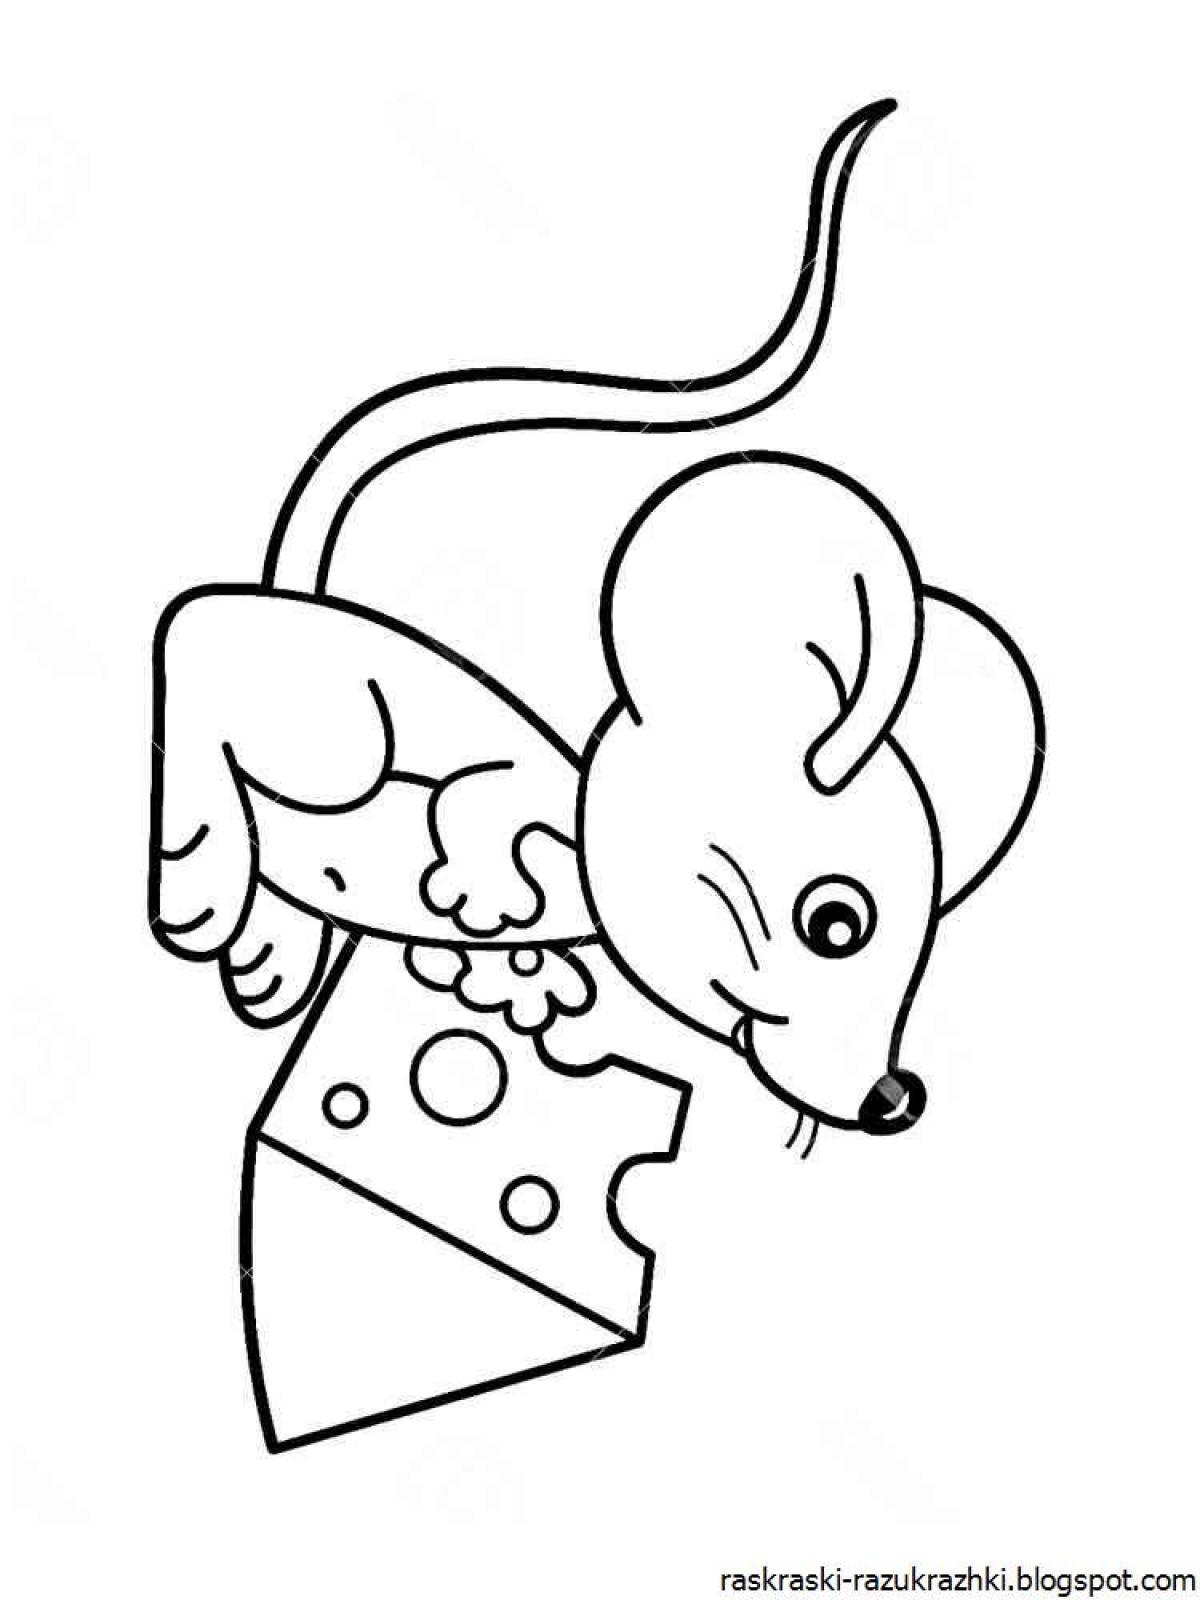 Великолепная раскраска мышонка